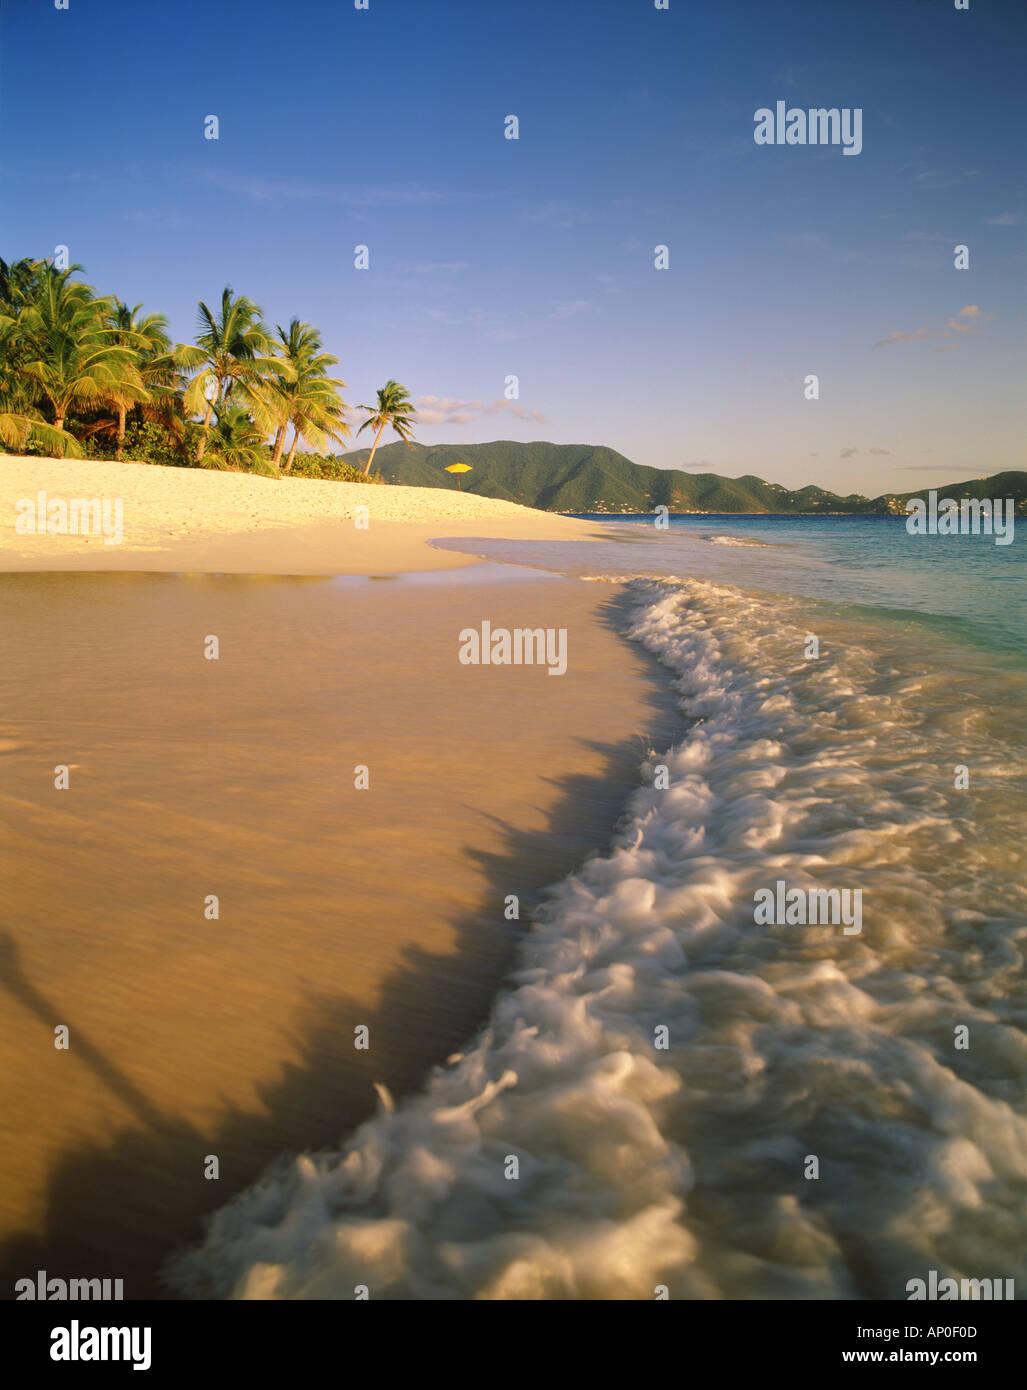 Calde acque dei Caraibi rotolare sulla riva della spiaggia di sabbia a chiave disinserita la isola di Tortola nelle isole Vergini britanniche Foto Stock